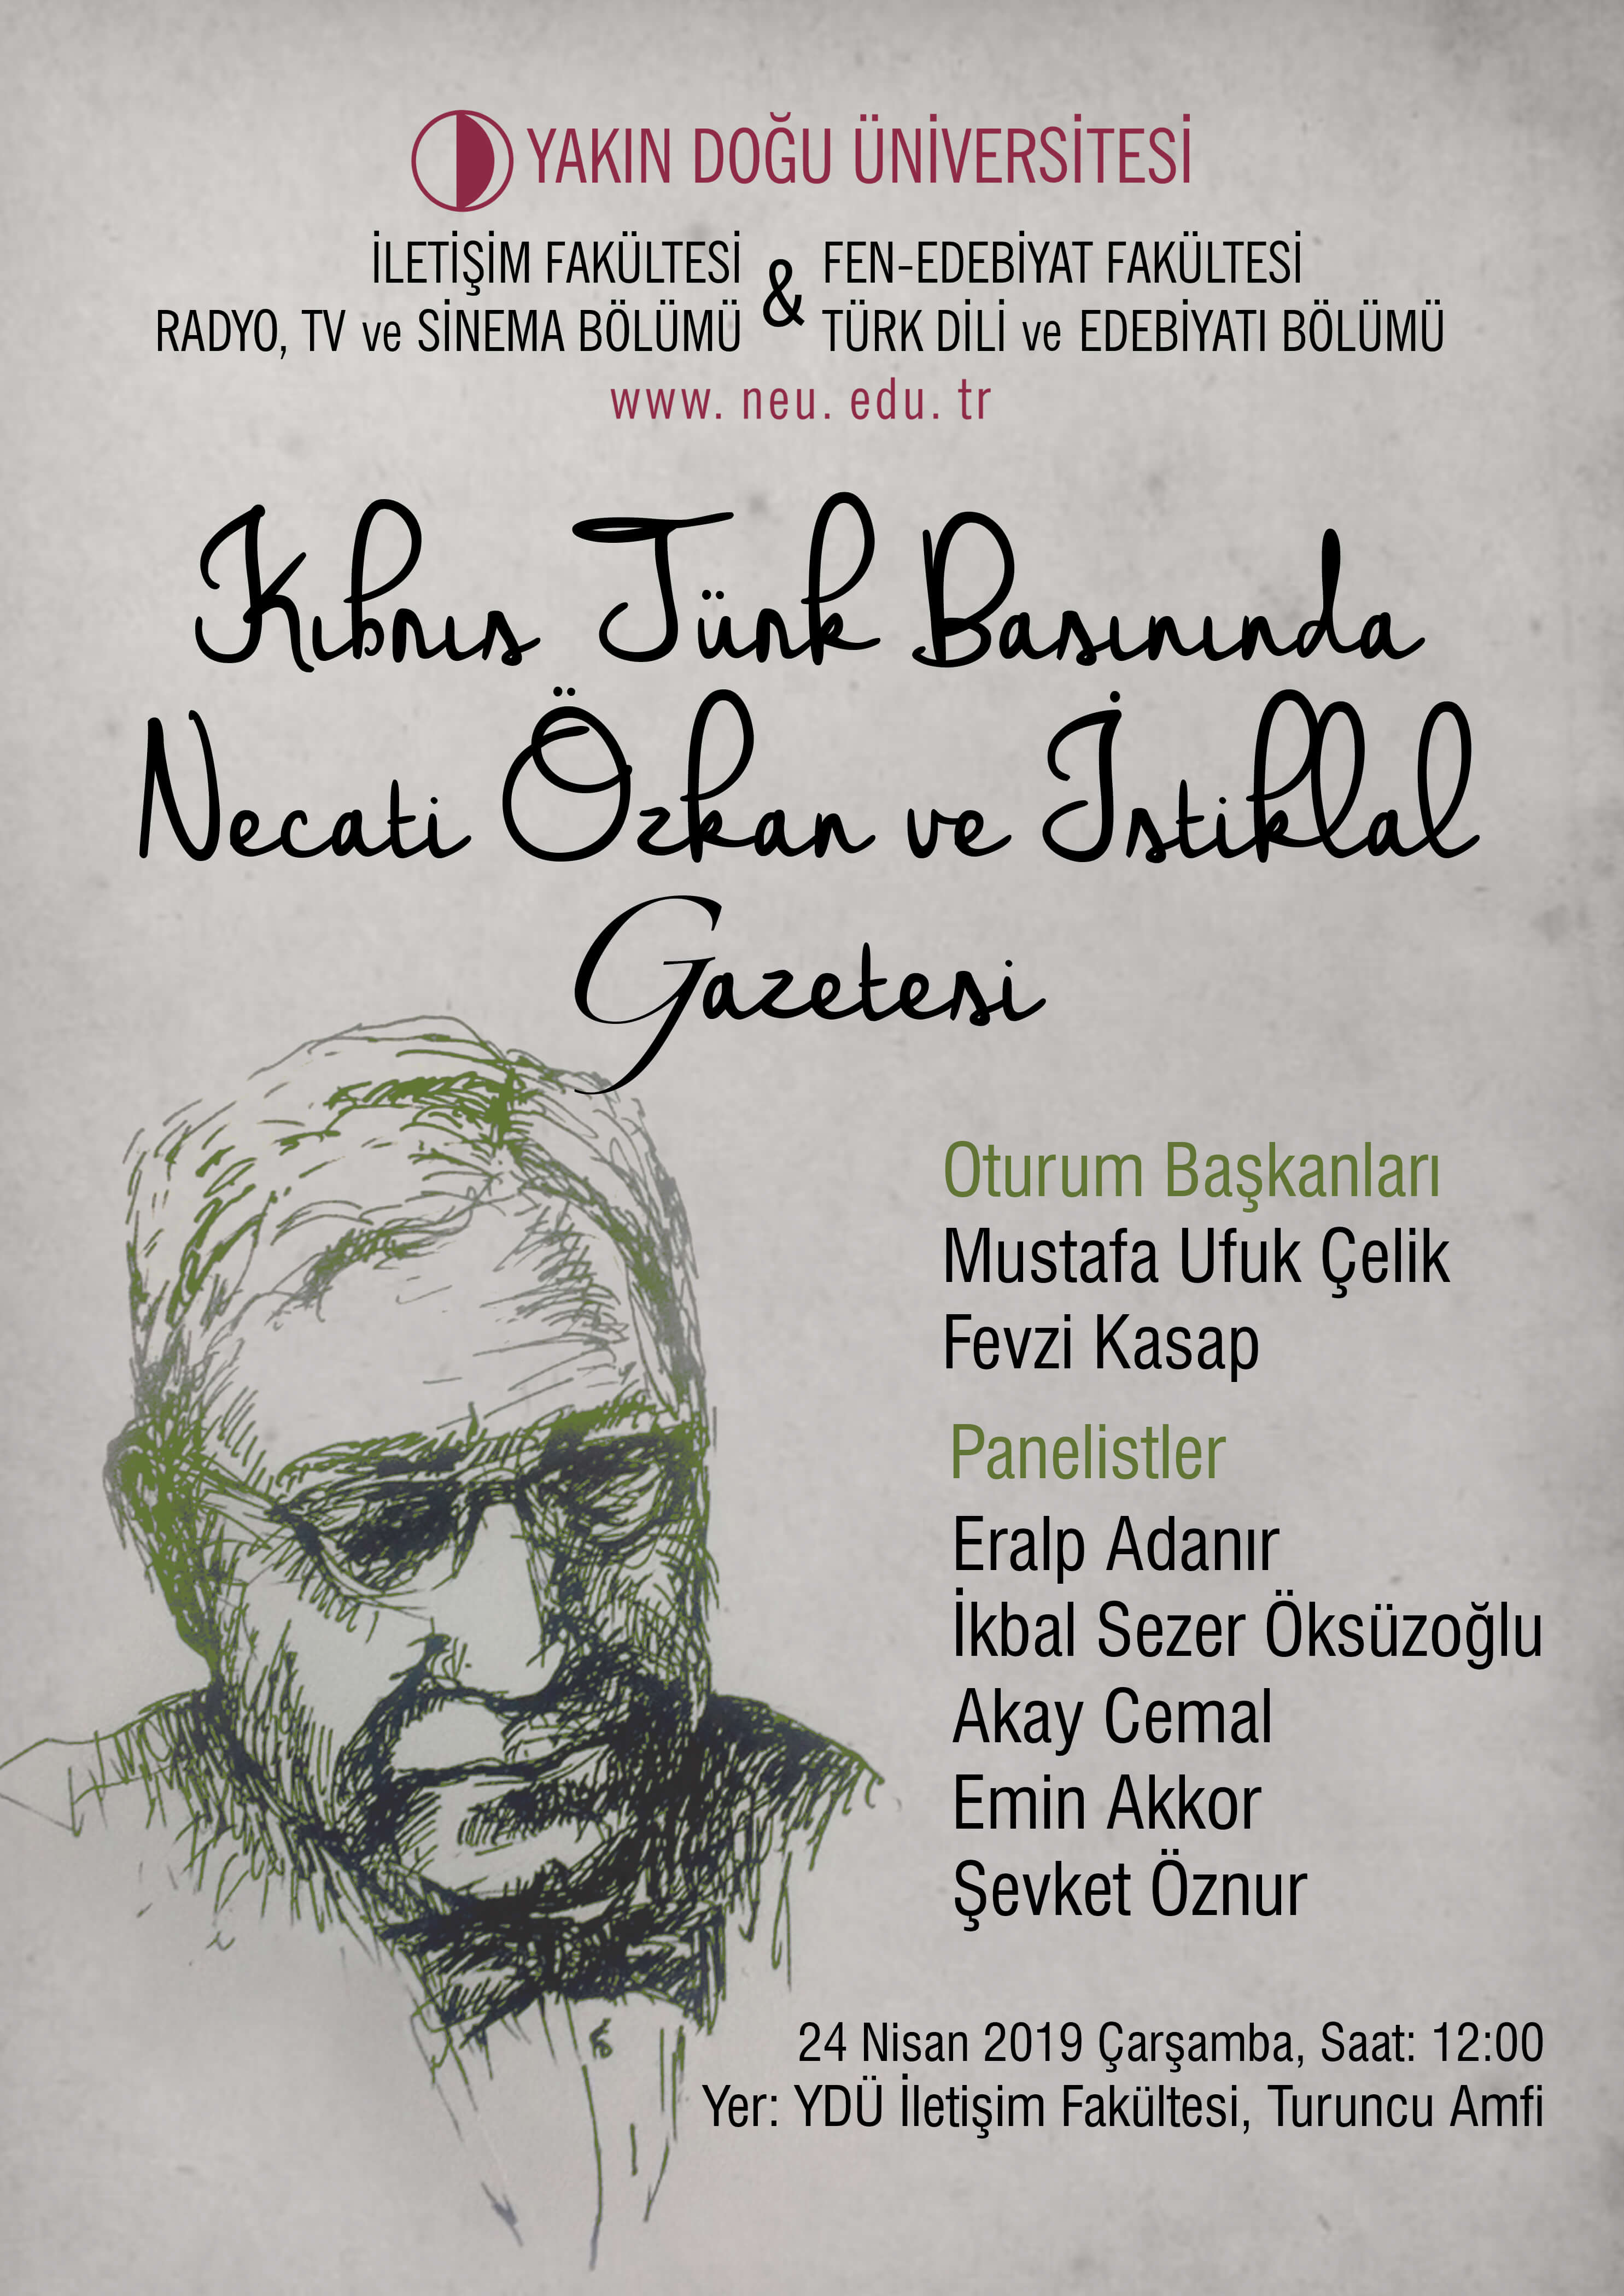 Panel: Kıbrıs Türk Basınında Necati Özkan ve İstiklal Gazetesi